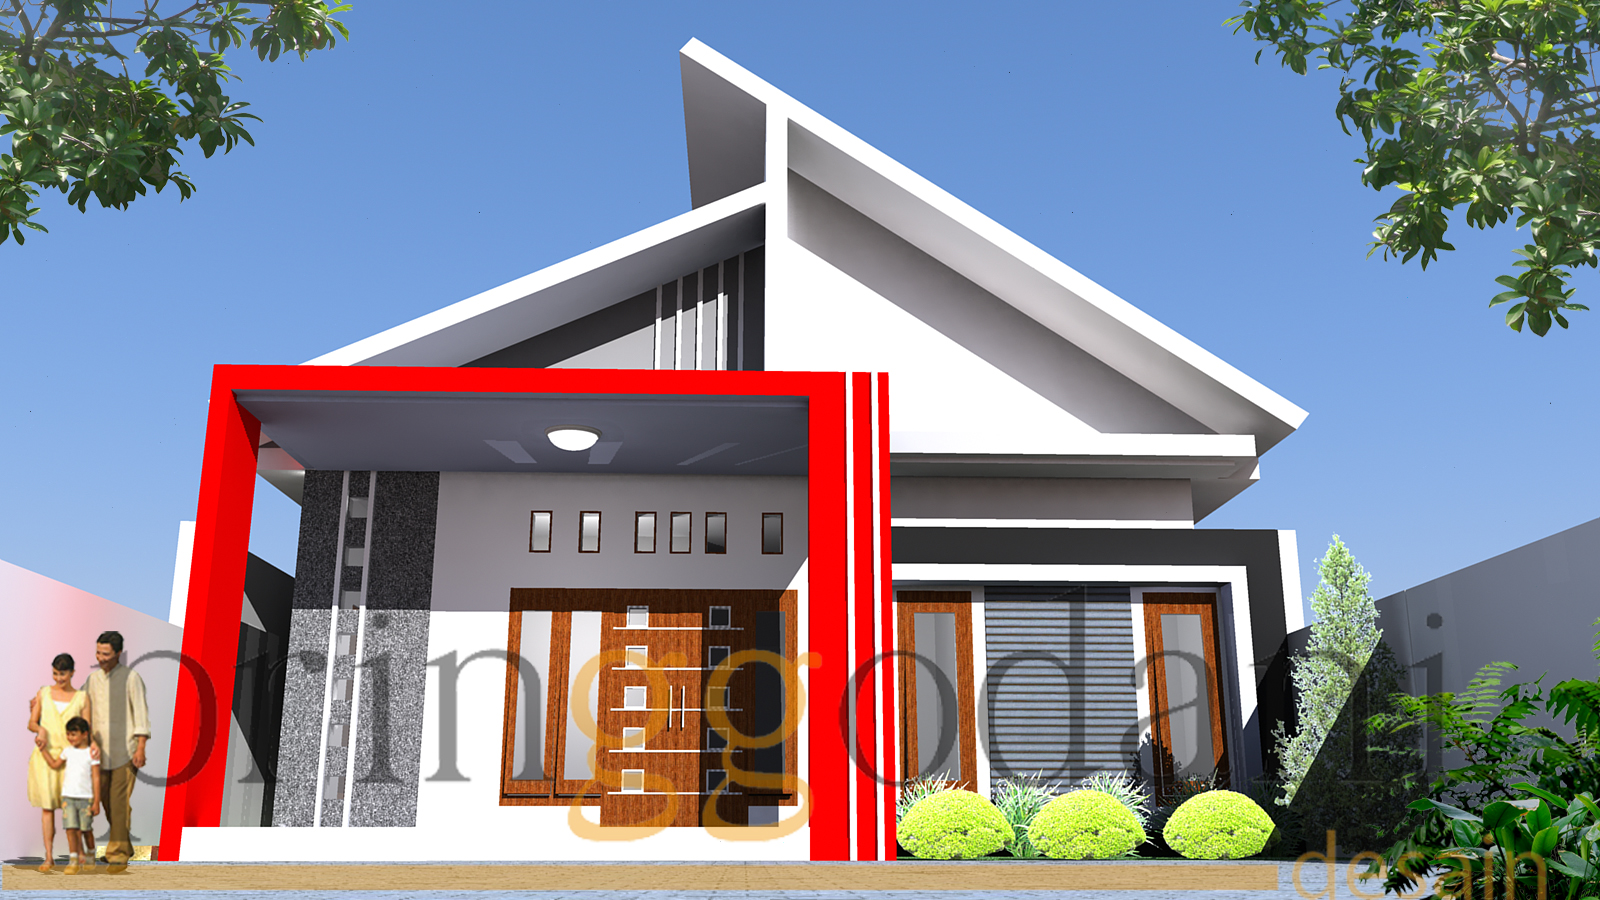 68 Desain Rumah Minimalis Warna Merah Desain Rumah Minimalis Terbaru